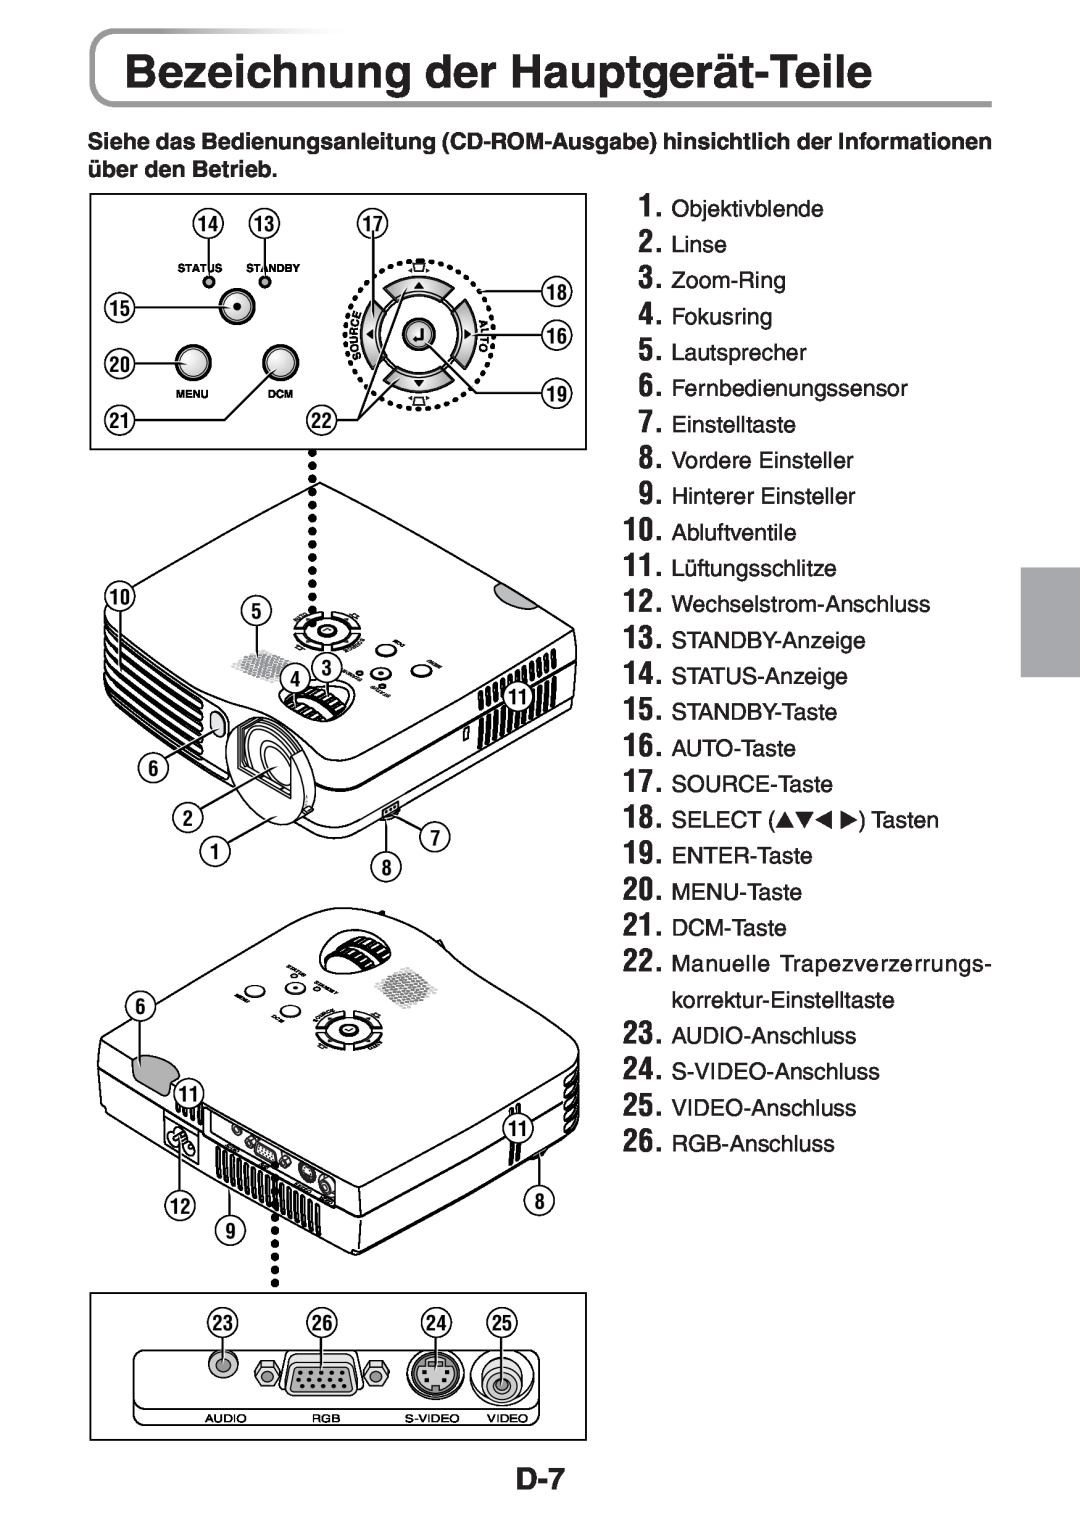 3M PX5 user manual Bezeichnung der Hauptgerät-Teile, Select, ENTER-Taste 